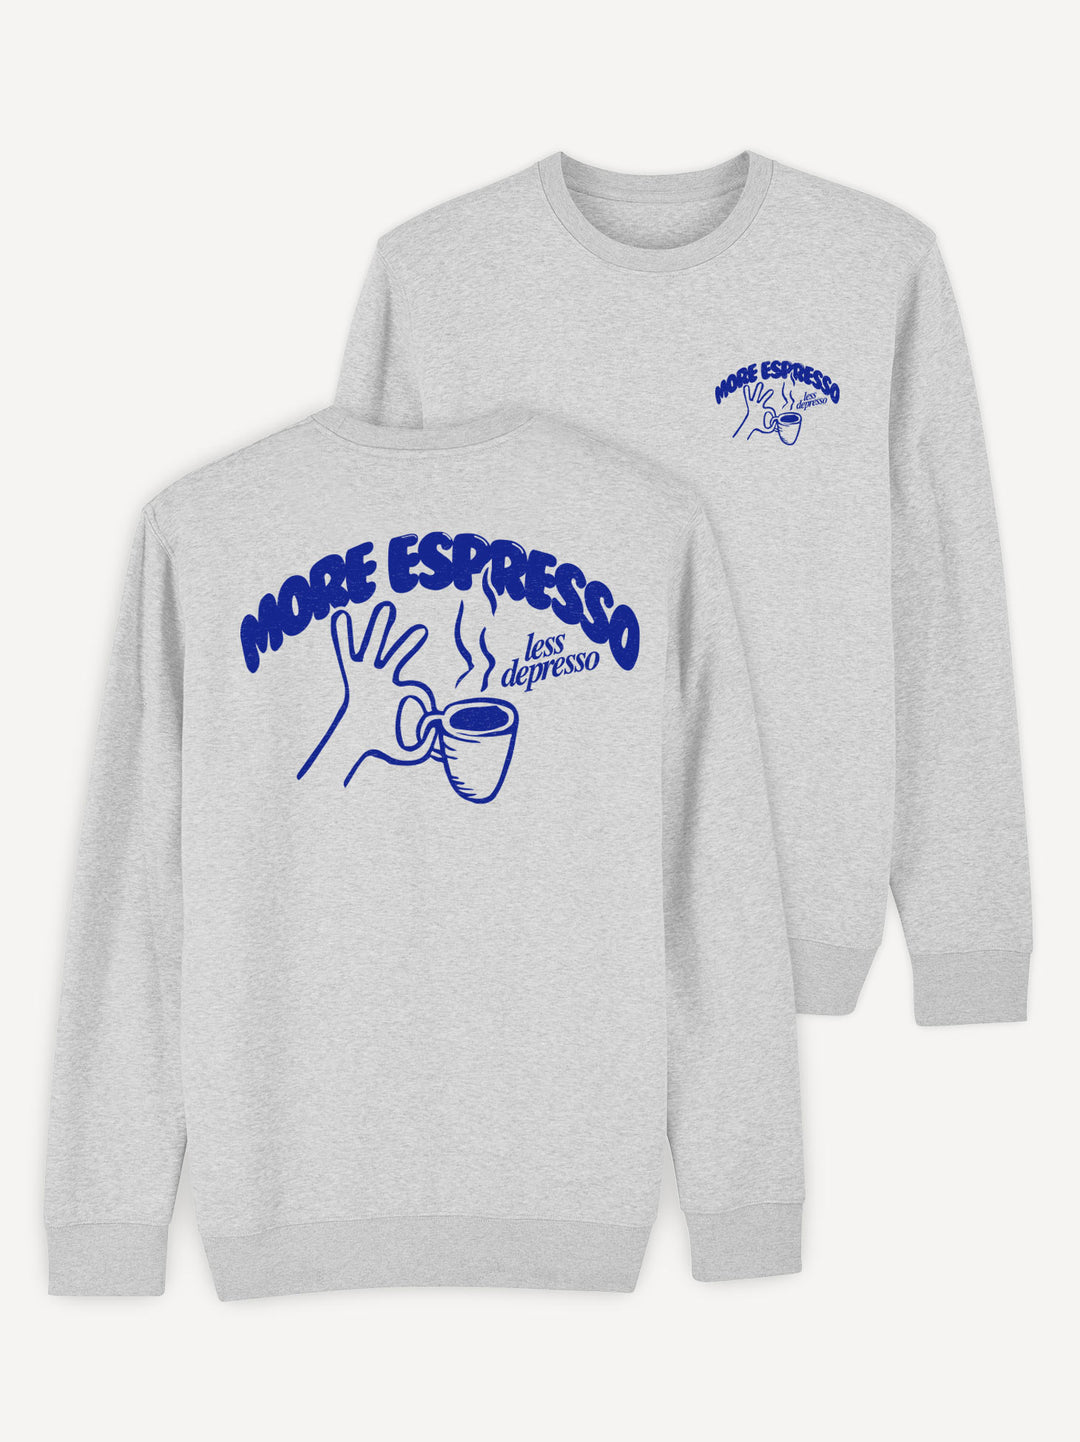 More Espresso Sweatshirt